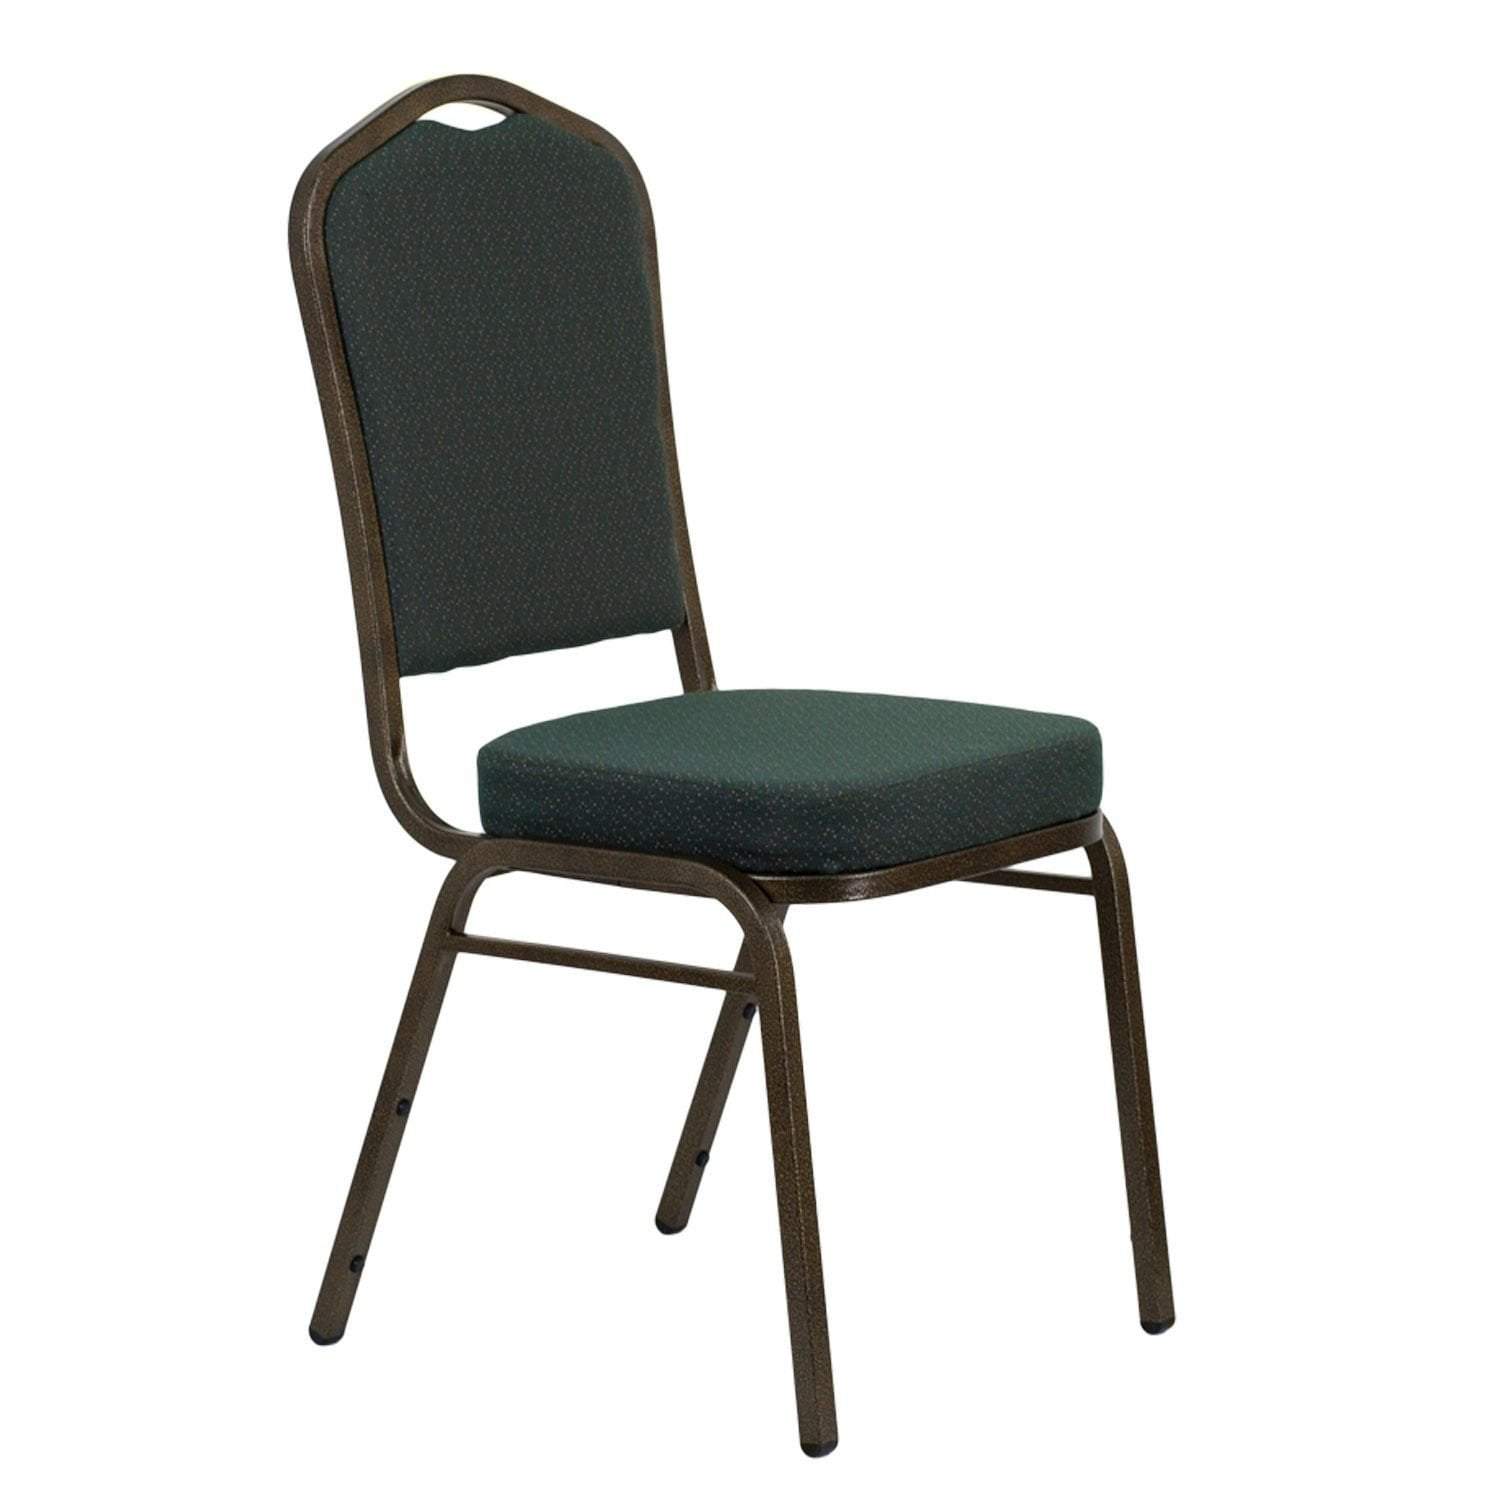 High Quality Aluminium Chair - Green